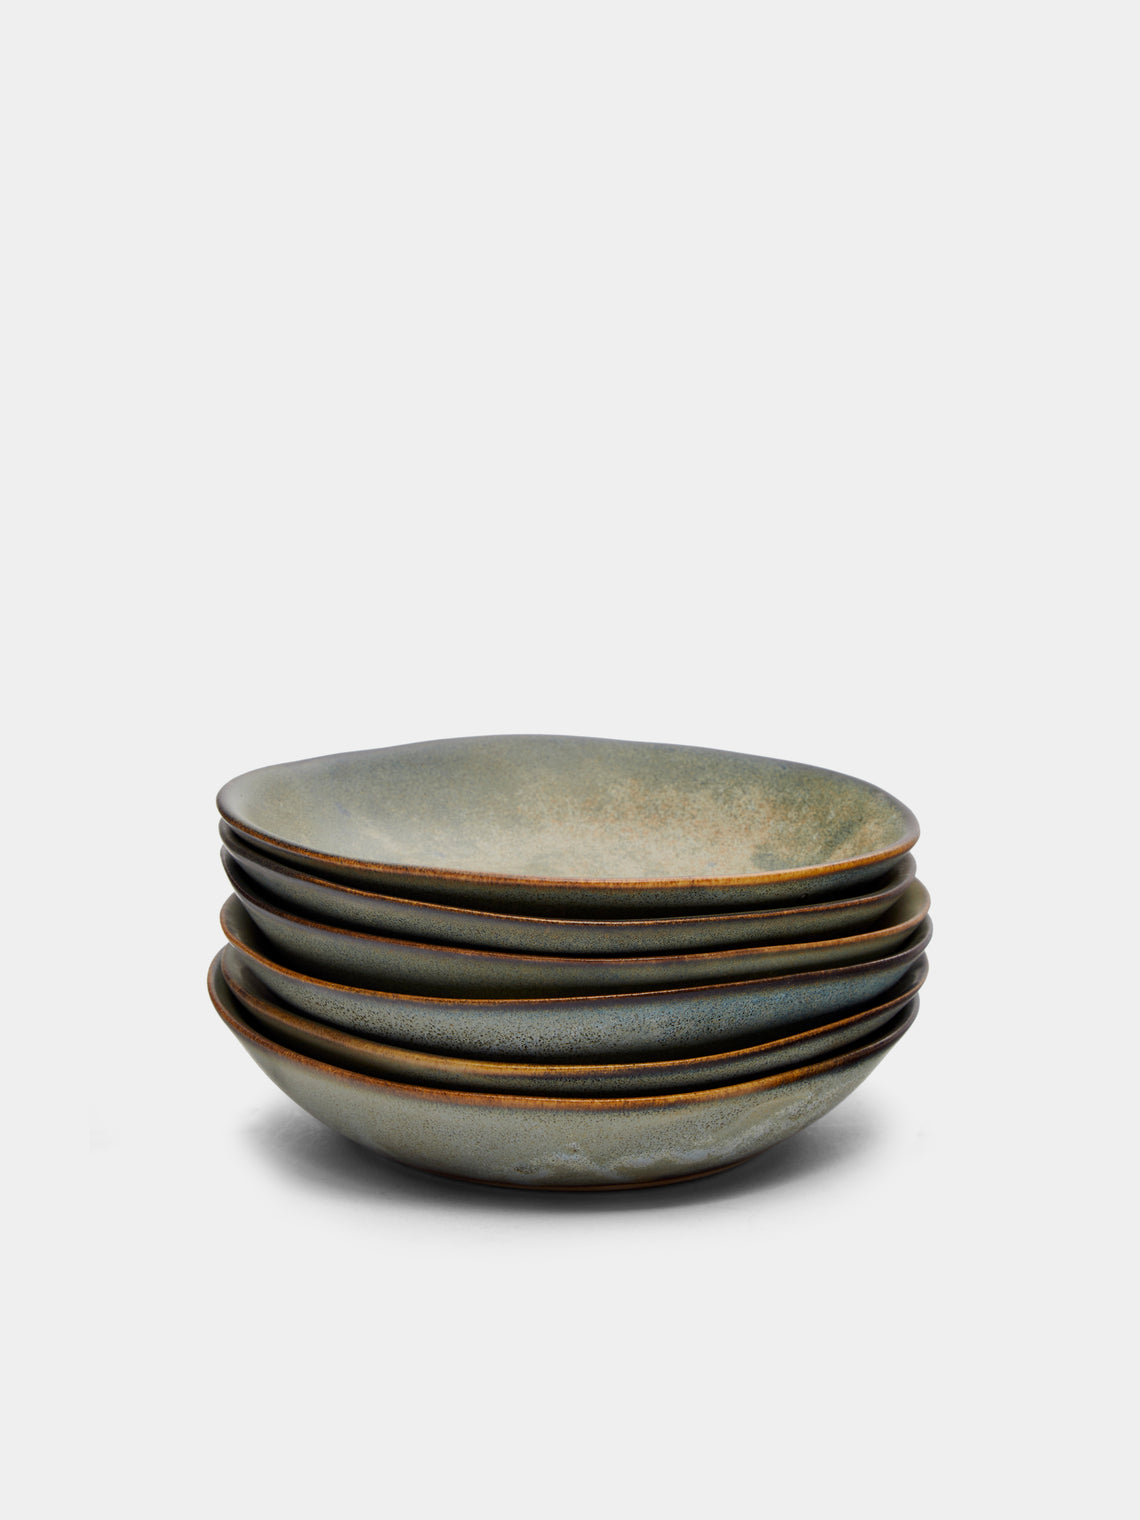 Mervyn Gers Ceramics - Hand-Glazed Ceramic Dessert Bowls (Set of 6) - Beige - ABASK